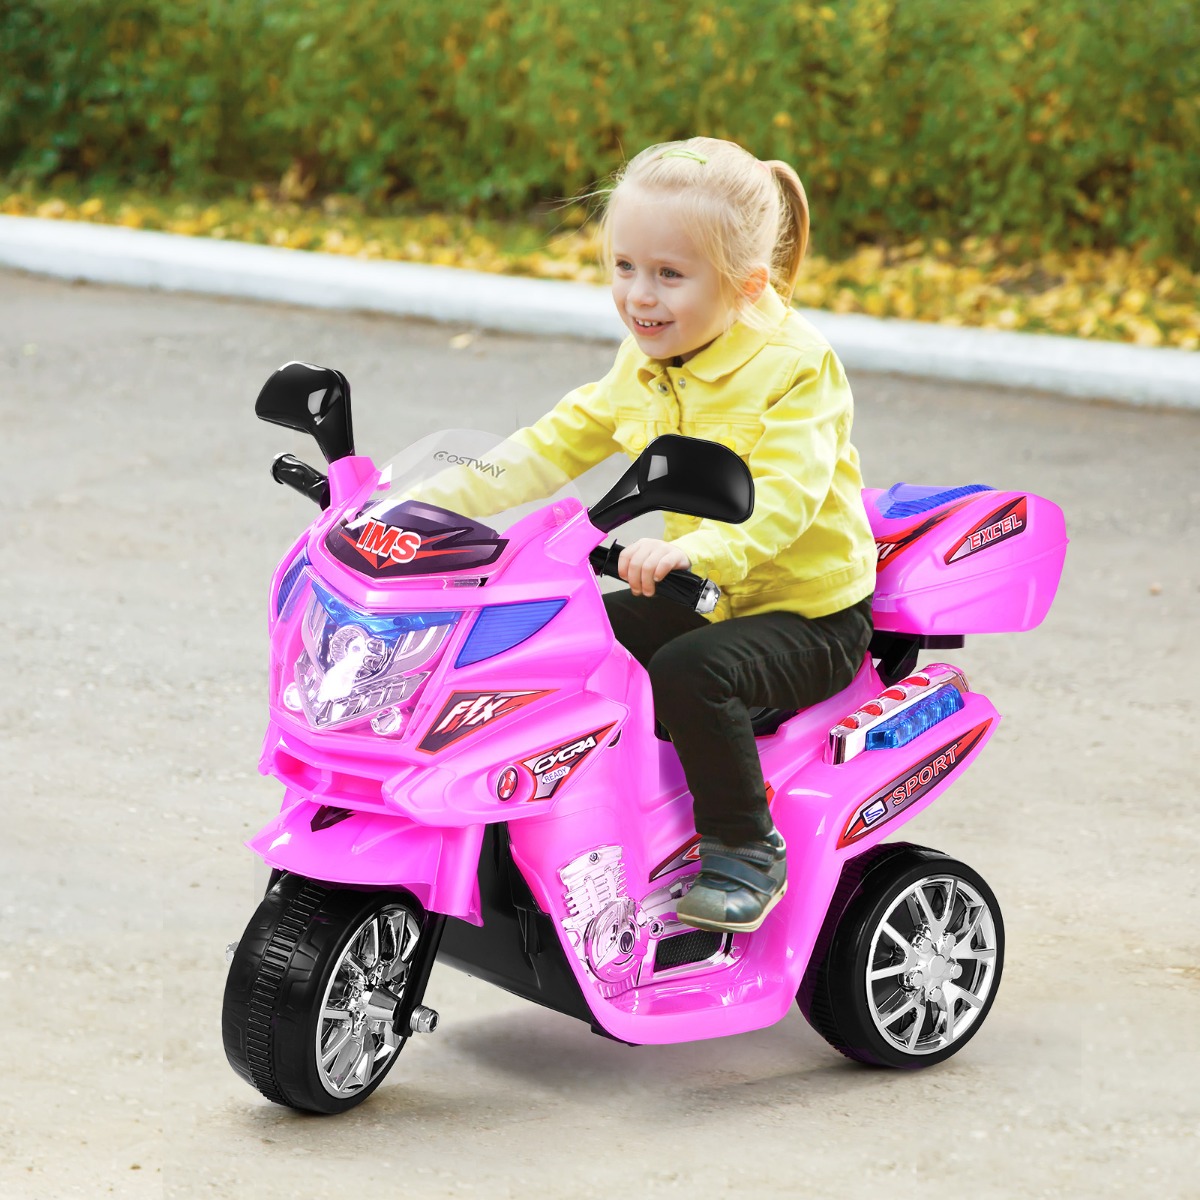 Kinder-Motorrad 6 V Elektro Motorrad mit Musik und Scheinwerfer für Kinder Rosa